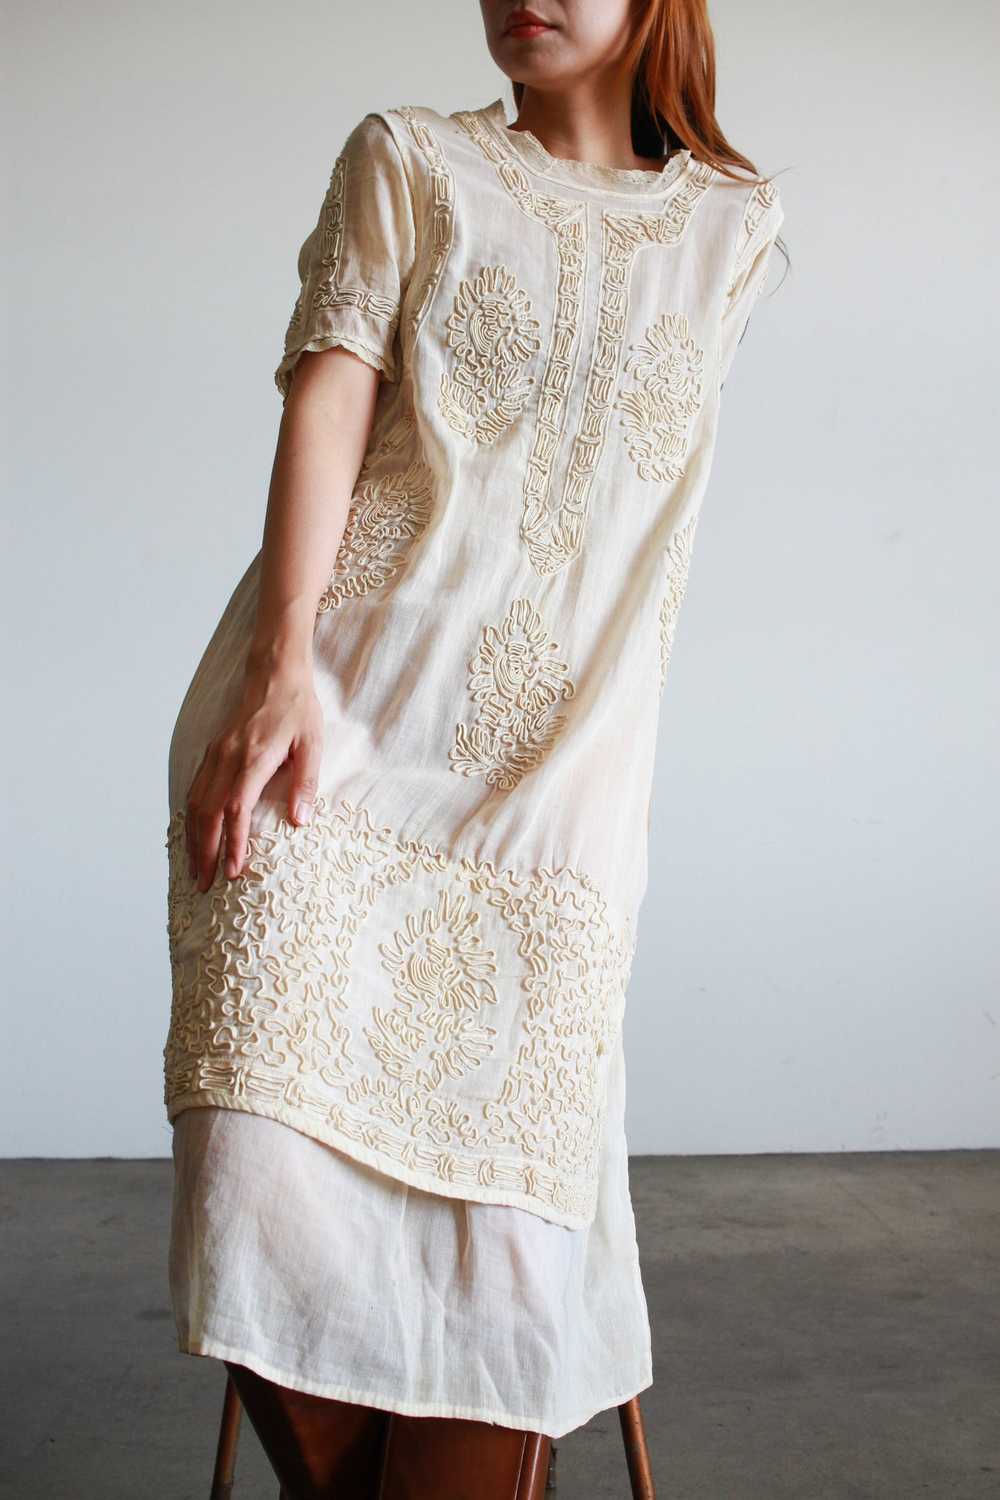 1910s Edwardian Ecru Soutache Cotton Voile Dress - image 6